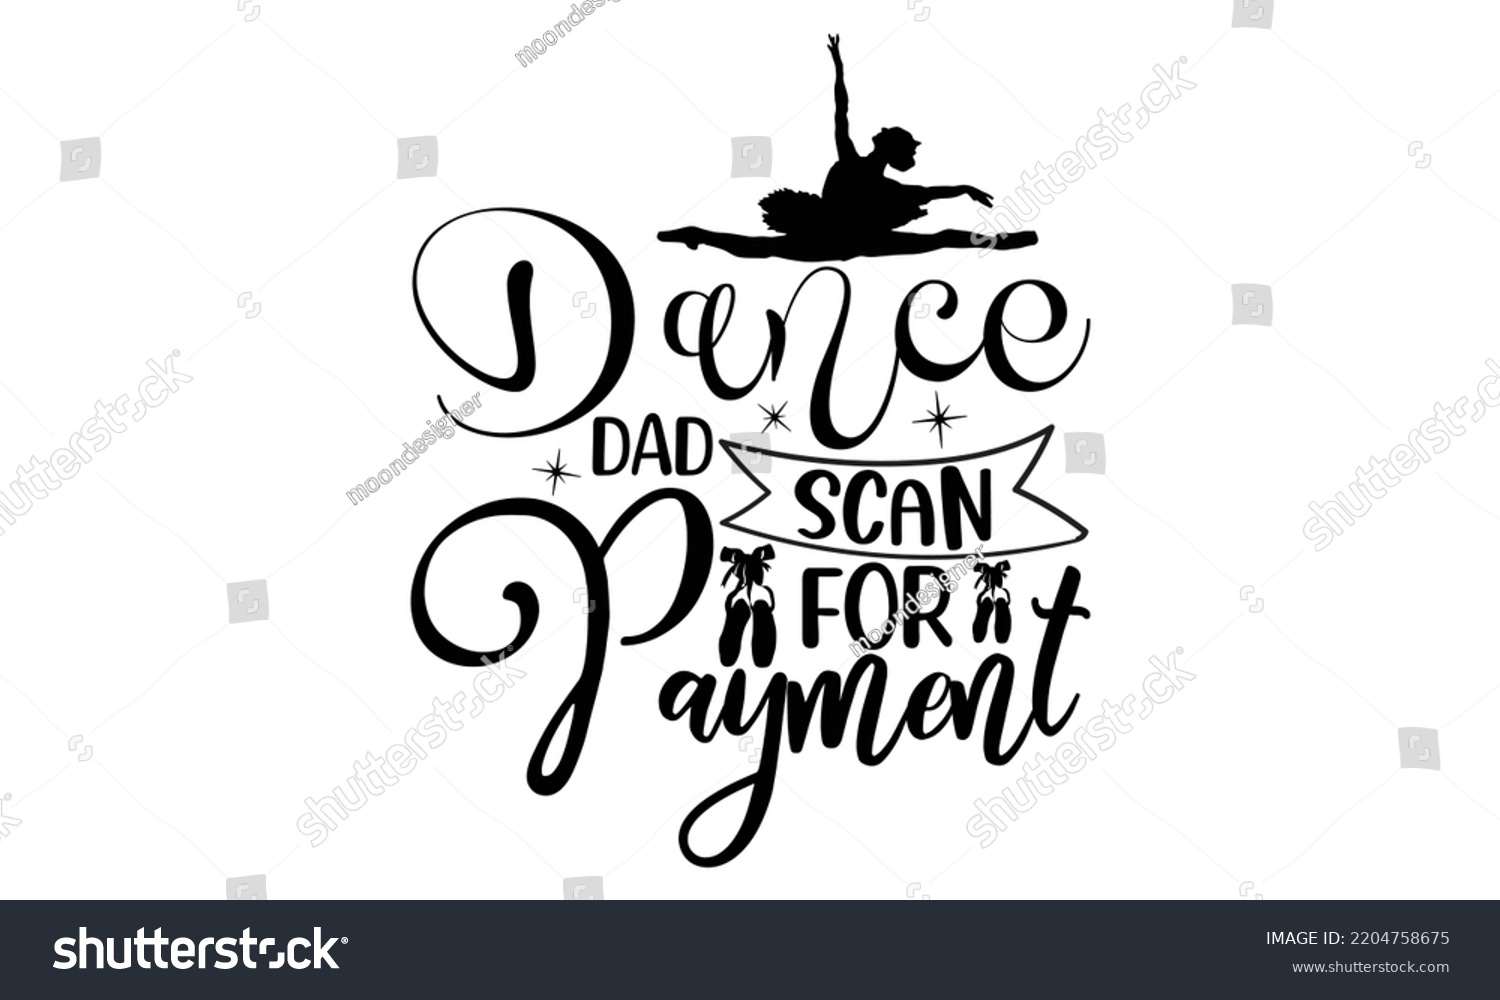 SVG of dance dad scan for payment - Ballet svg t shirt design, ballet SVG Cut Files, Girl Ballet Design, Hand drawn lettering phrase and vector sign, EPS 10 svg